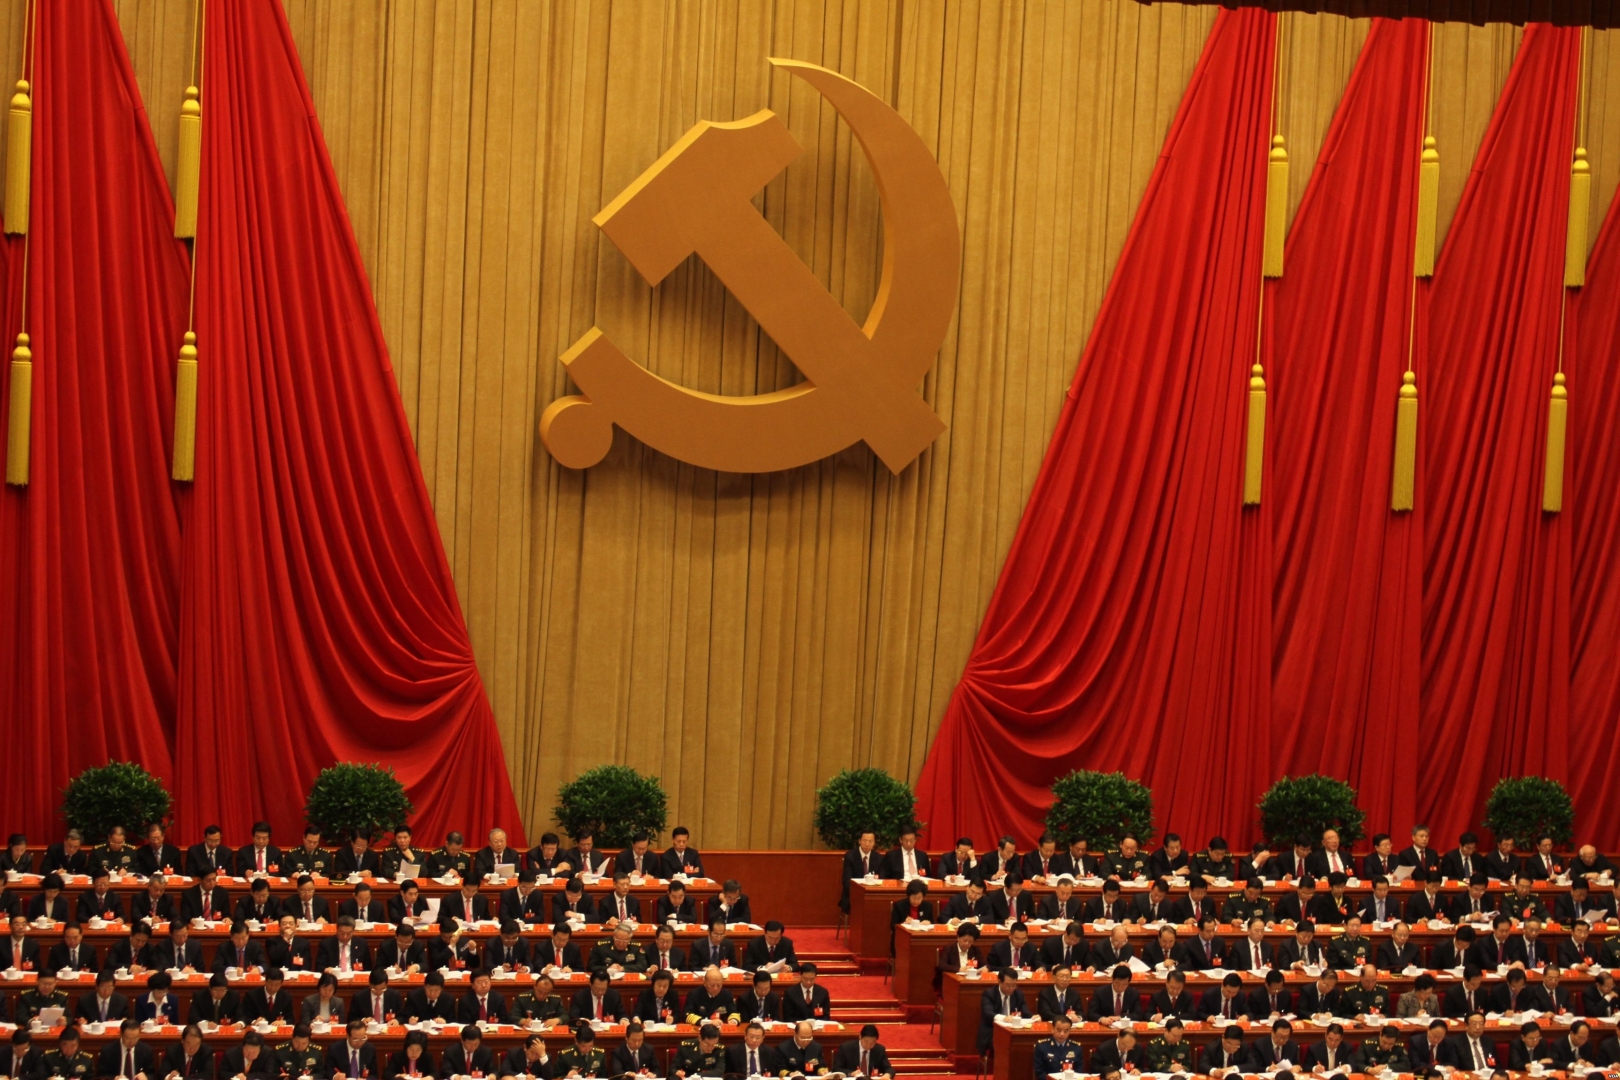 Геннадий Зюганов: «Компартия КНР наметила удивительную программу построения общества единой судьбы человечества»